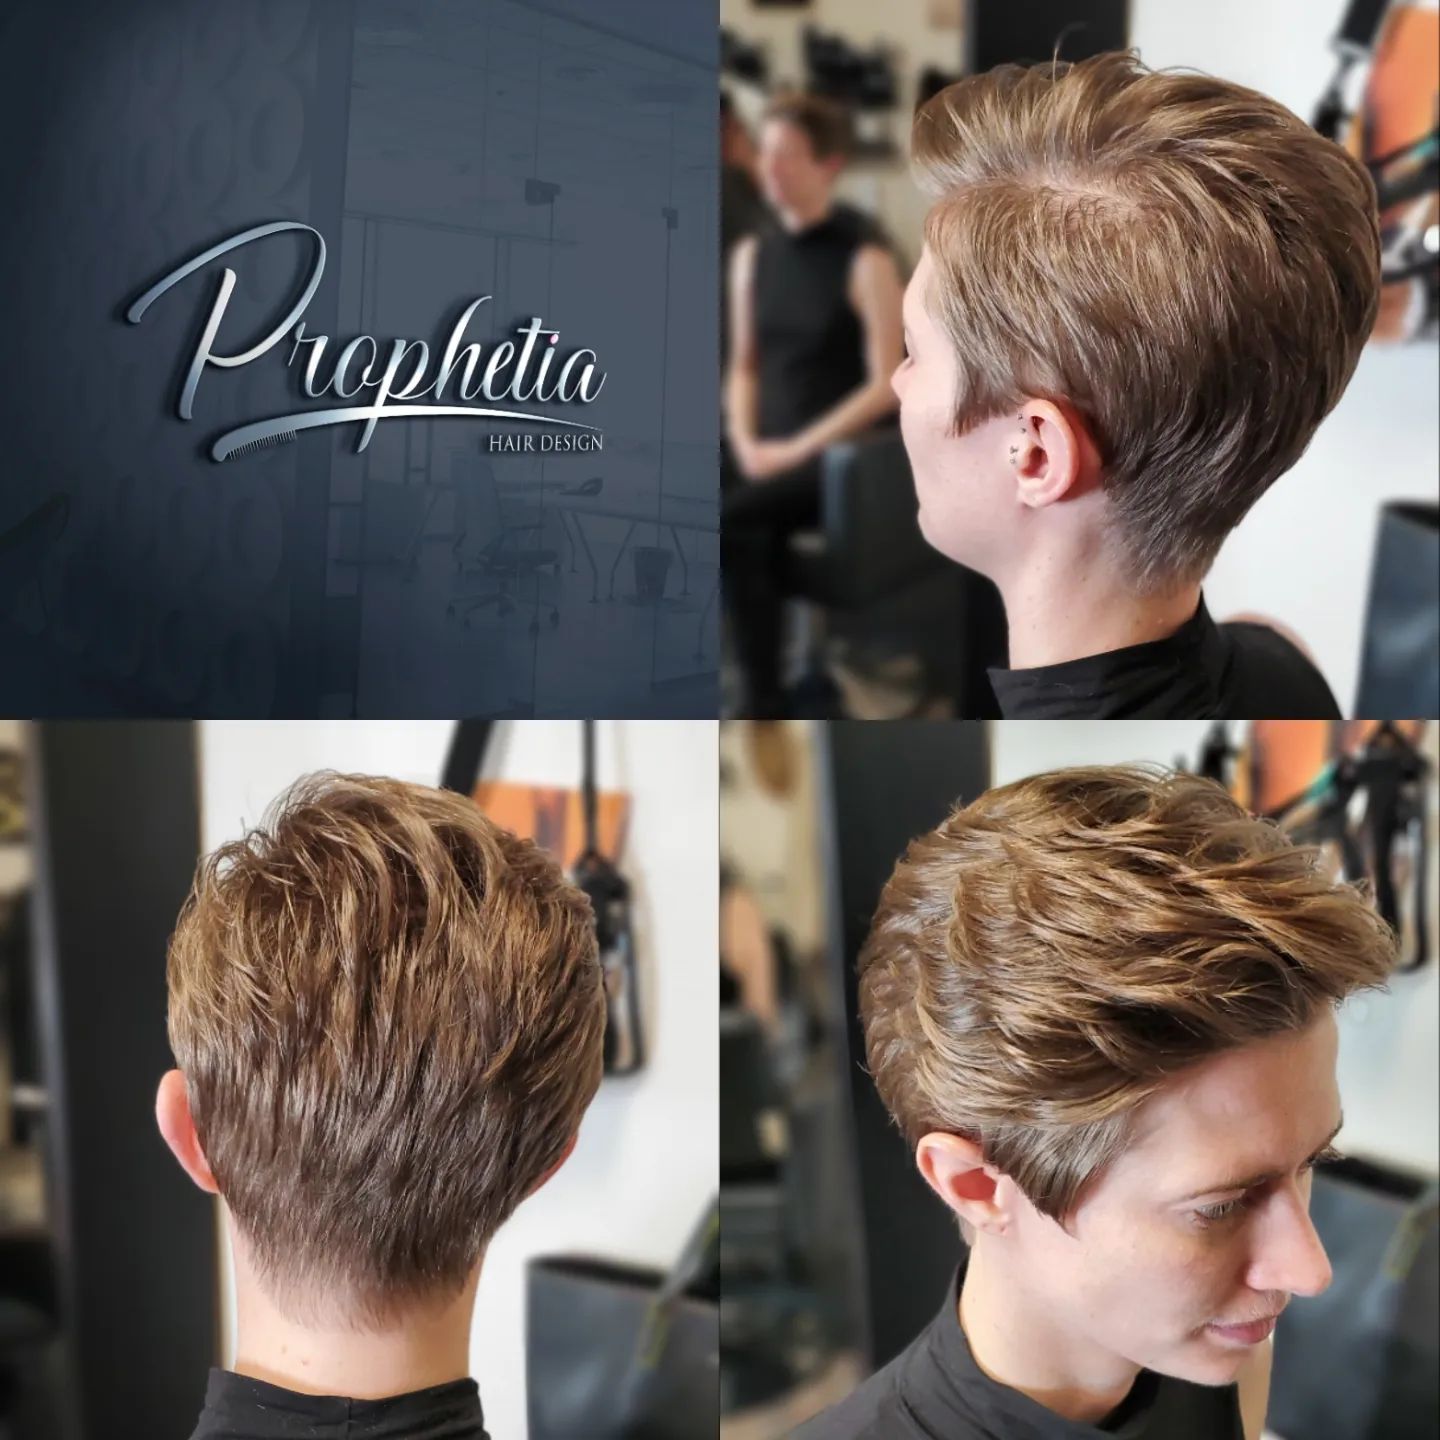 Prophetia Hair Design